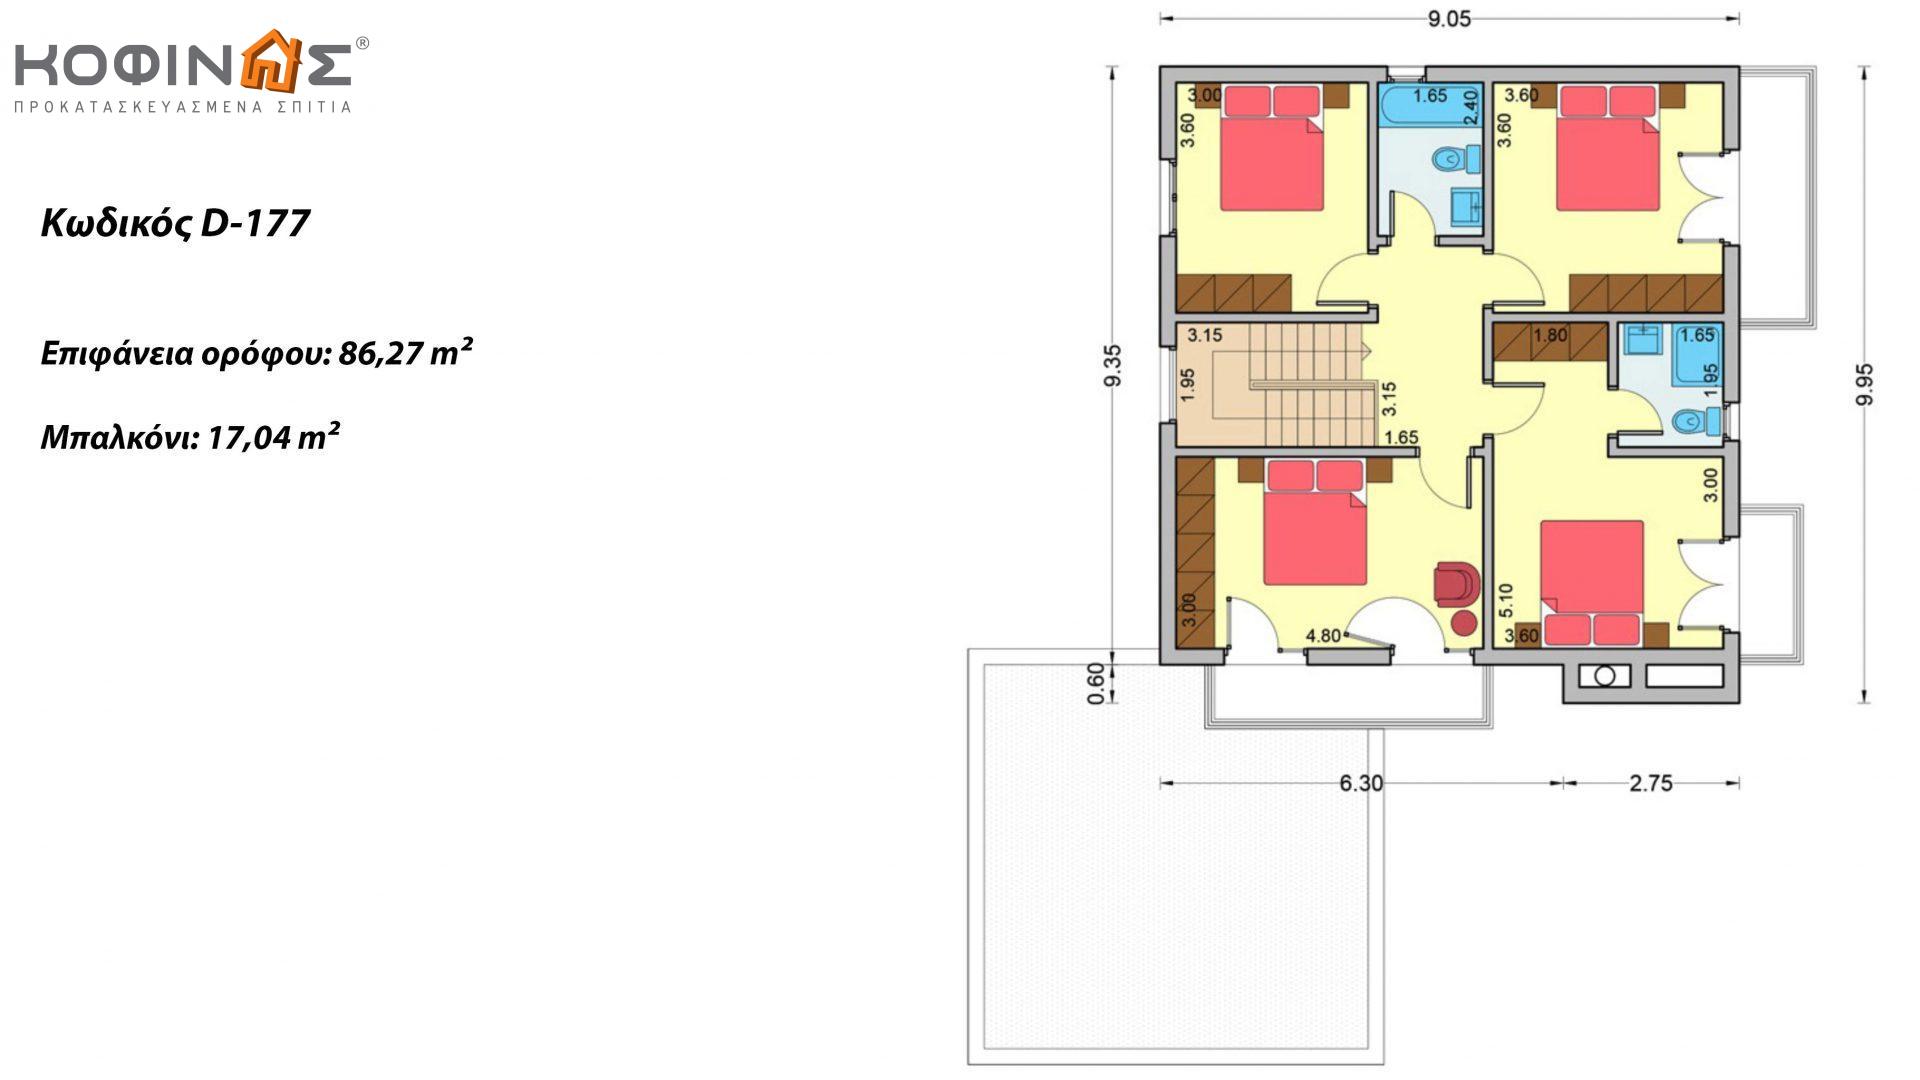 Διώροφη Κατοικία D-177, συνολικής επιφάνειας 177,46 τ.μ., +Γκαράζ 41.38 m²(=218,84 m²),συνολική επιφάνεια στεγασμένων χώρων 4.20 τ.μ., μπαλκόνια 17.04 τ.μ.